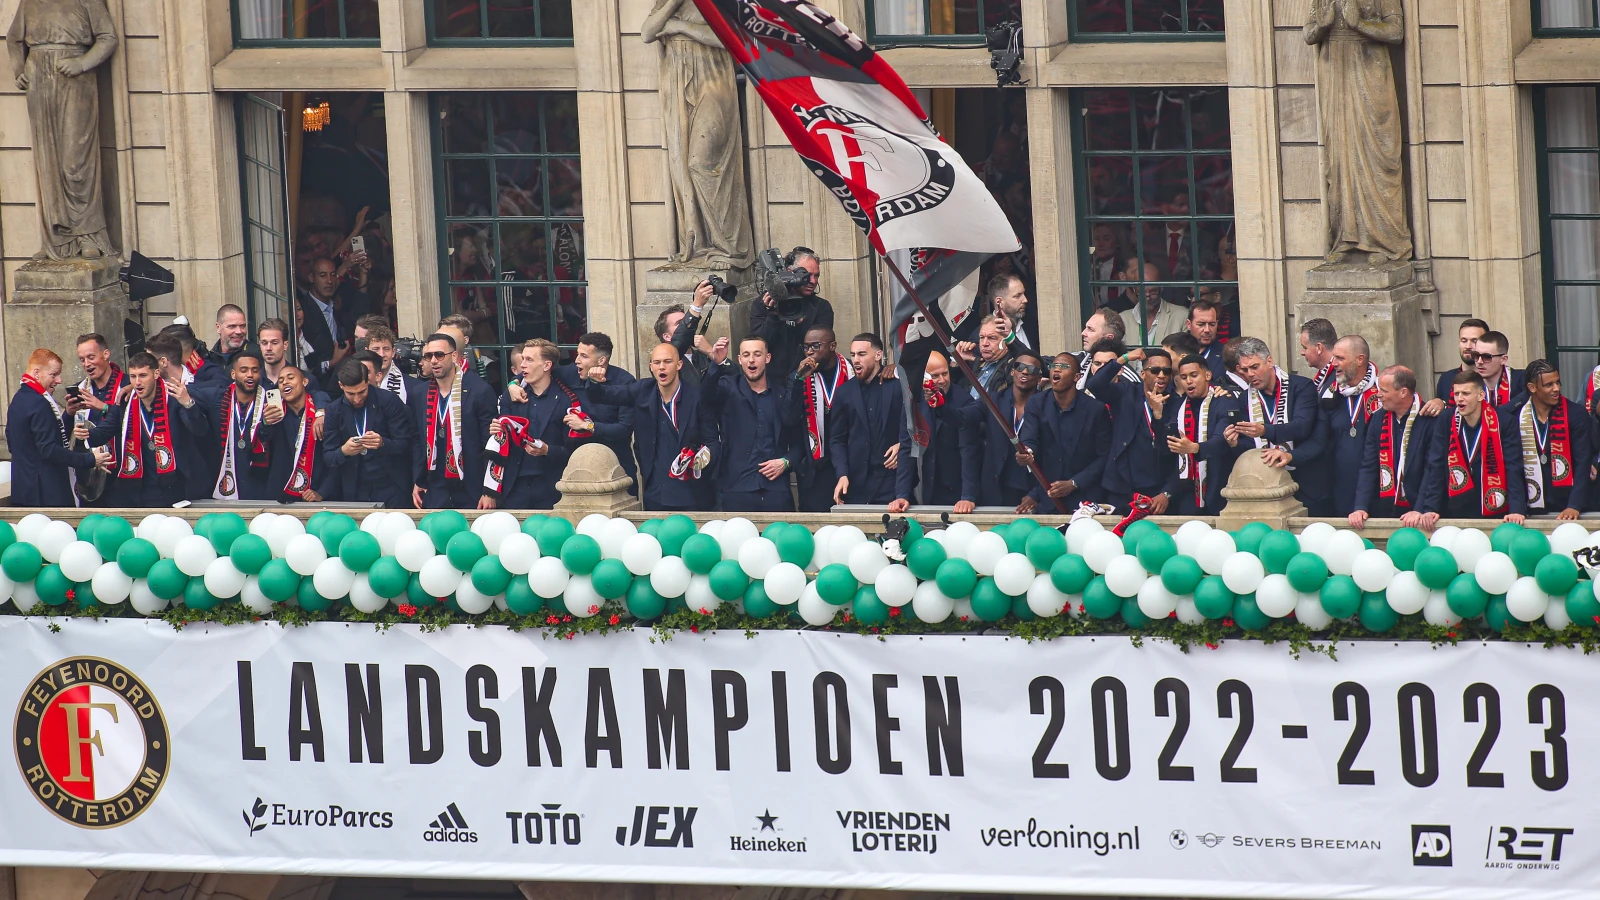 '16 keer uit eigen kracht!', een prachtig boek over alle kampioenschappen van Feyenoord